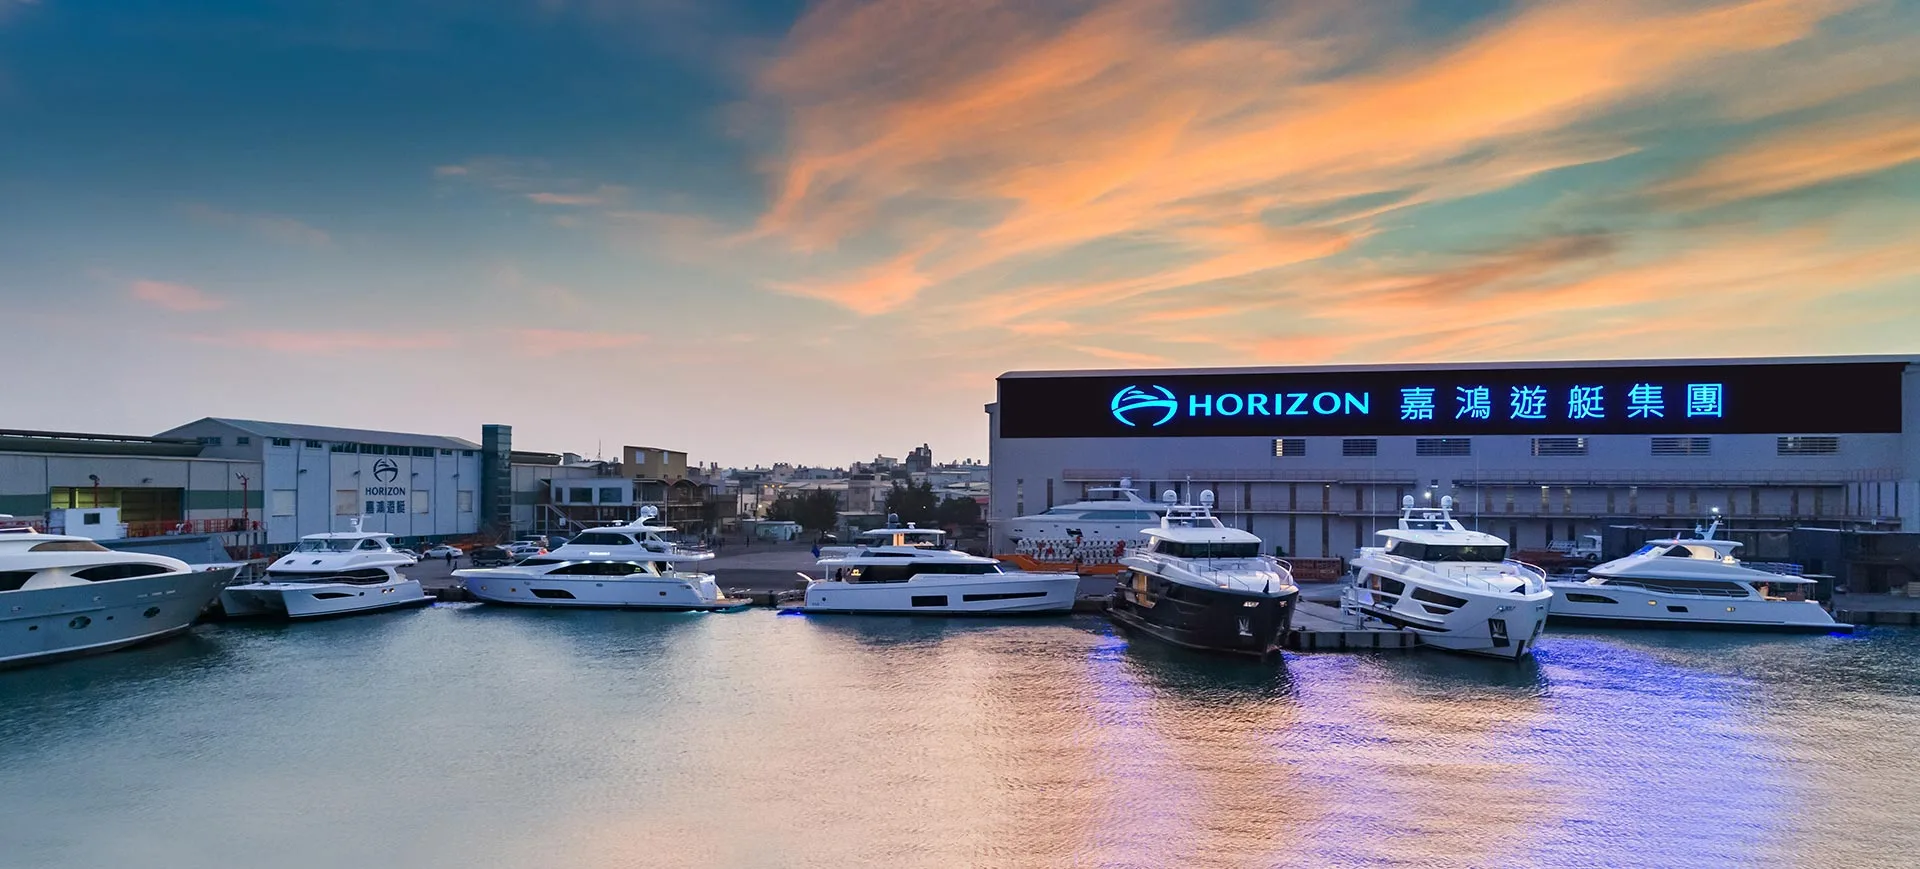 Horizon Yachts